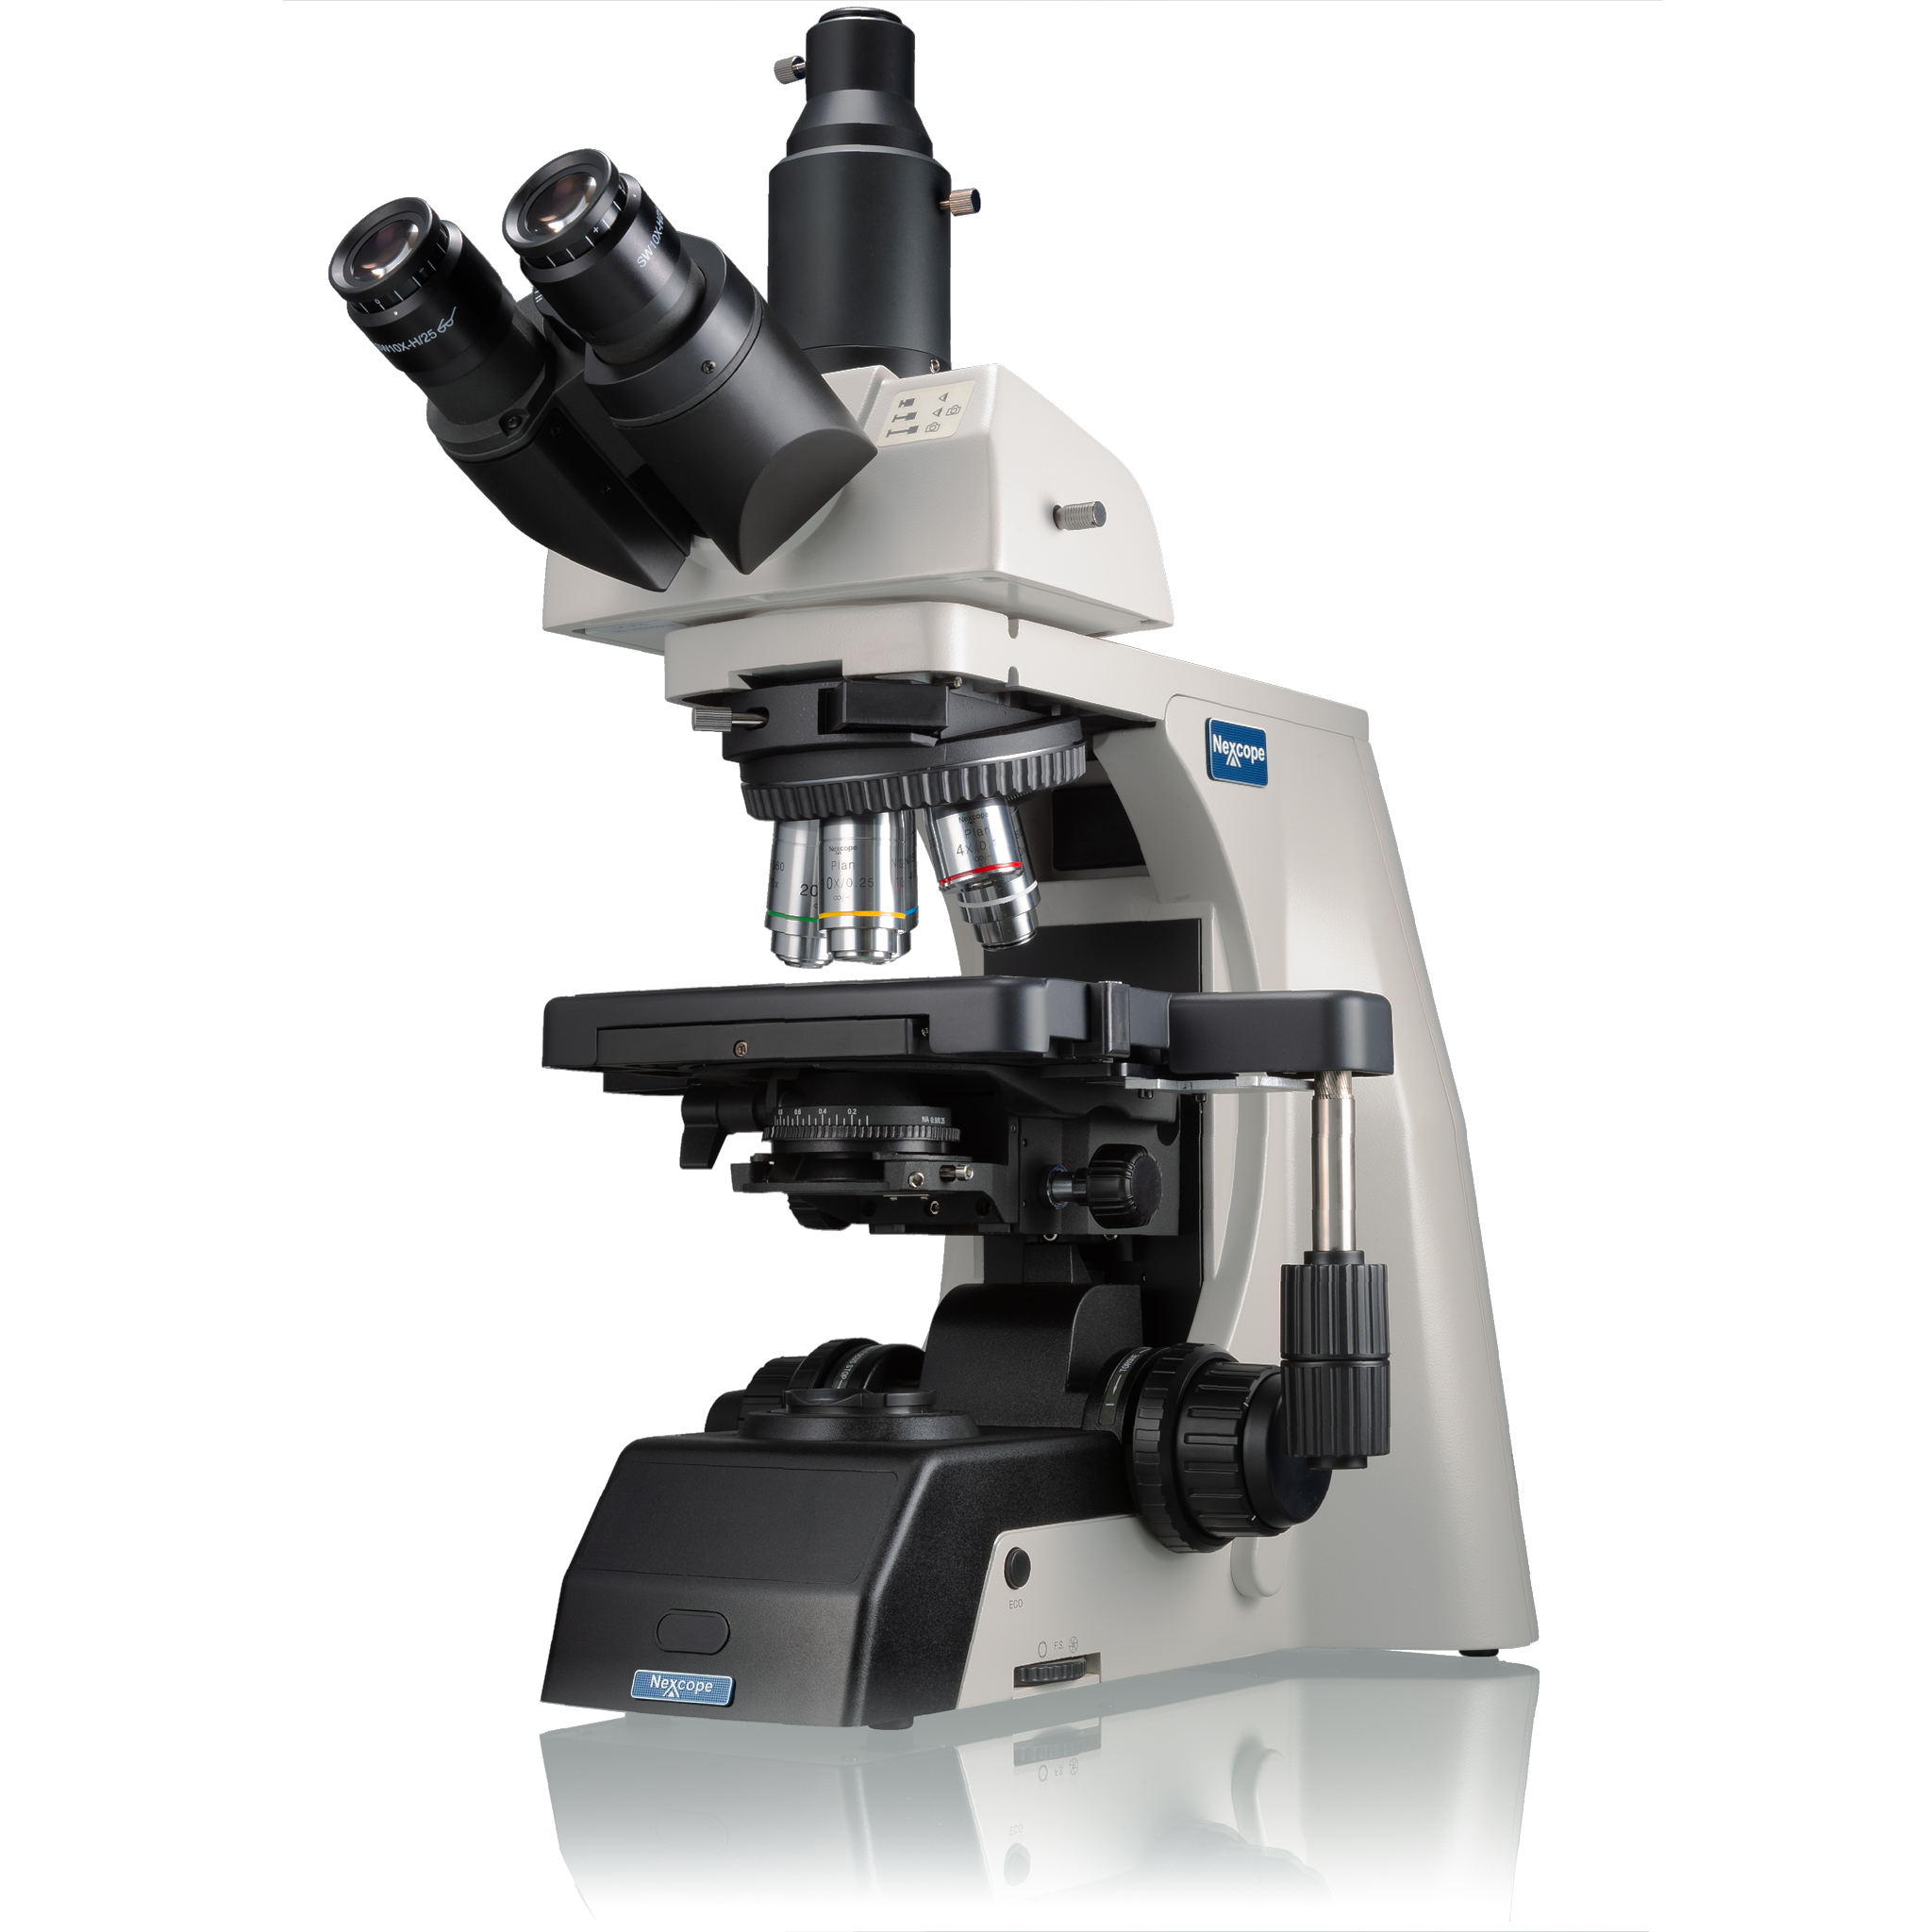 Nexcope NE910 microscope de laboratoire professionnel avec une grande capacité d'évolution